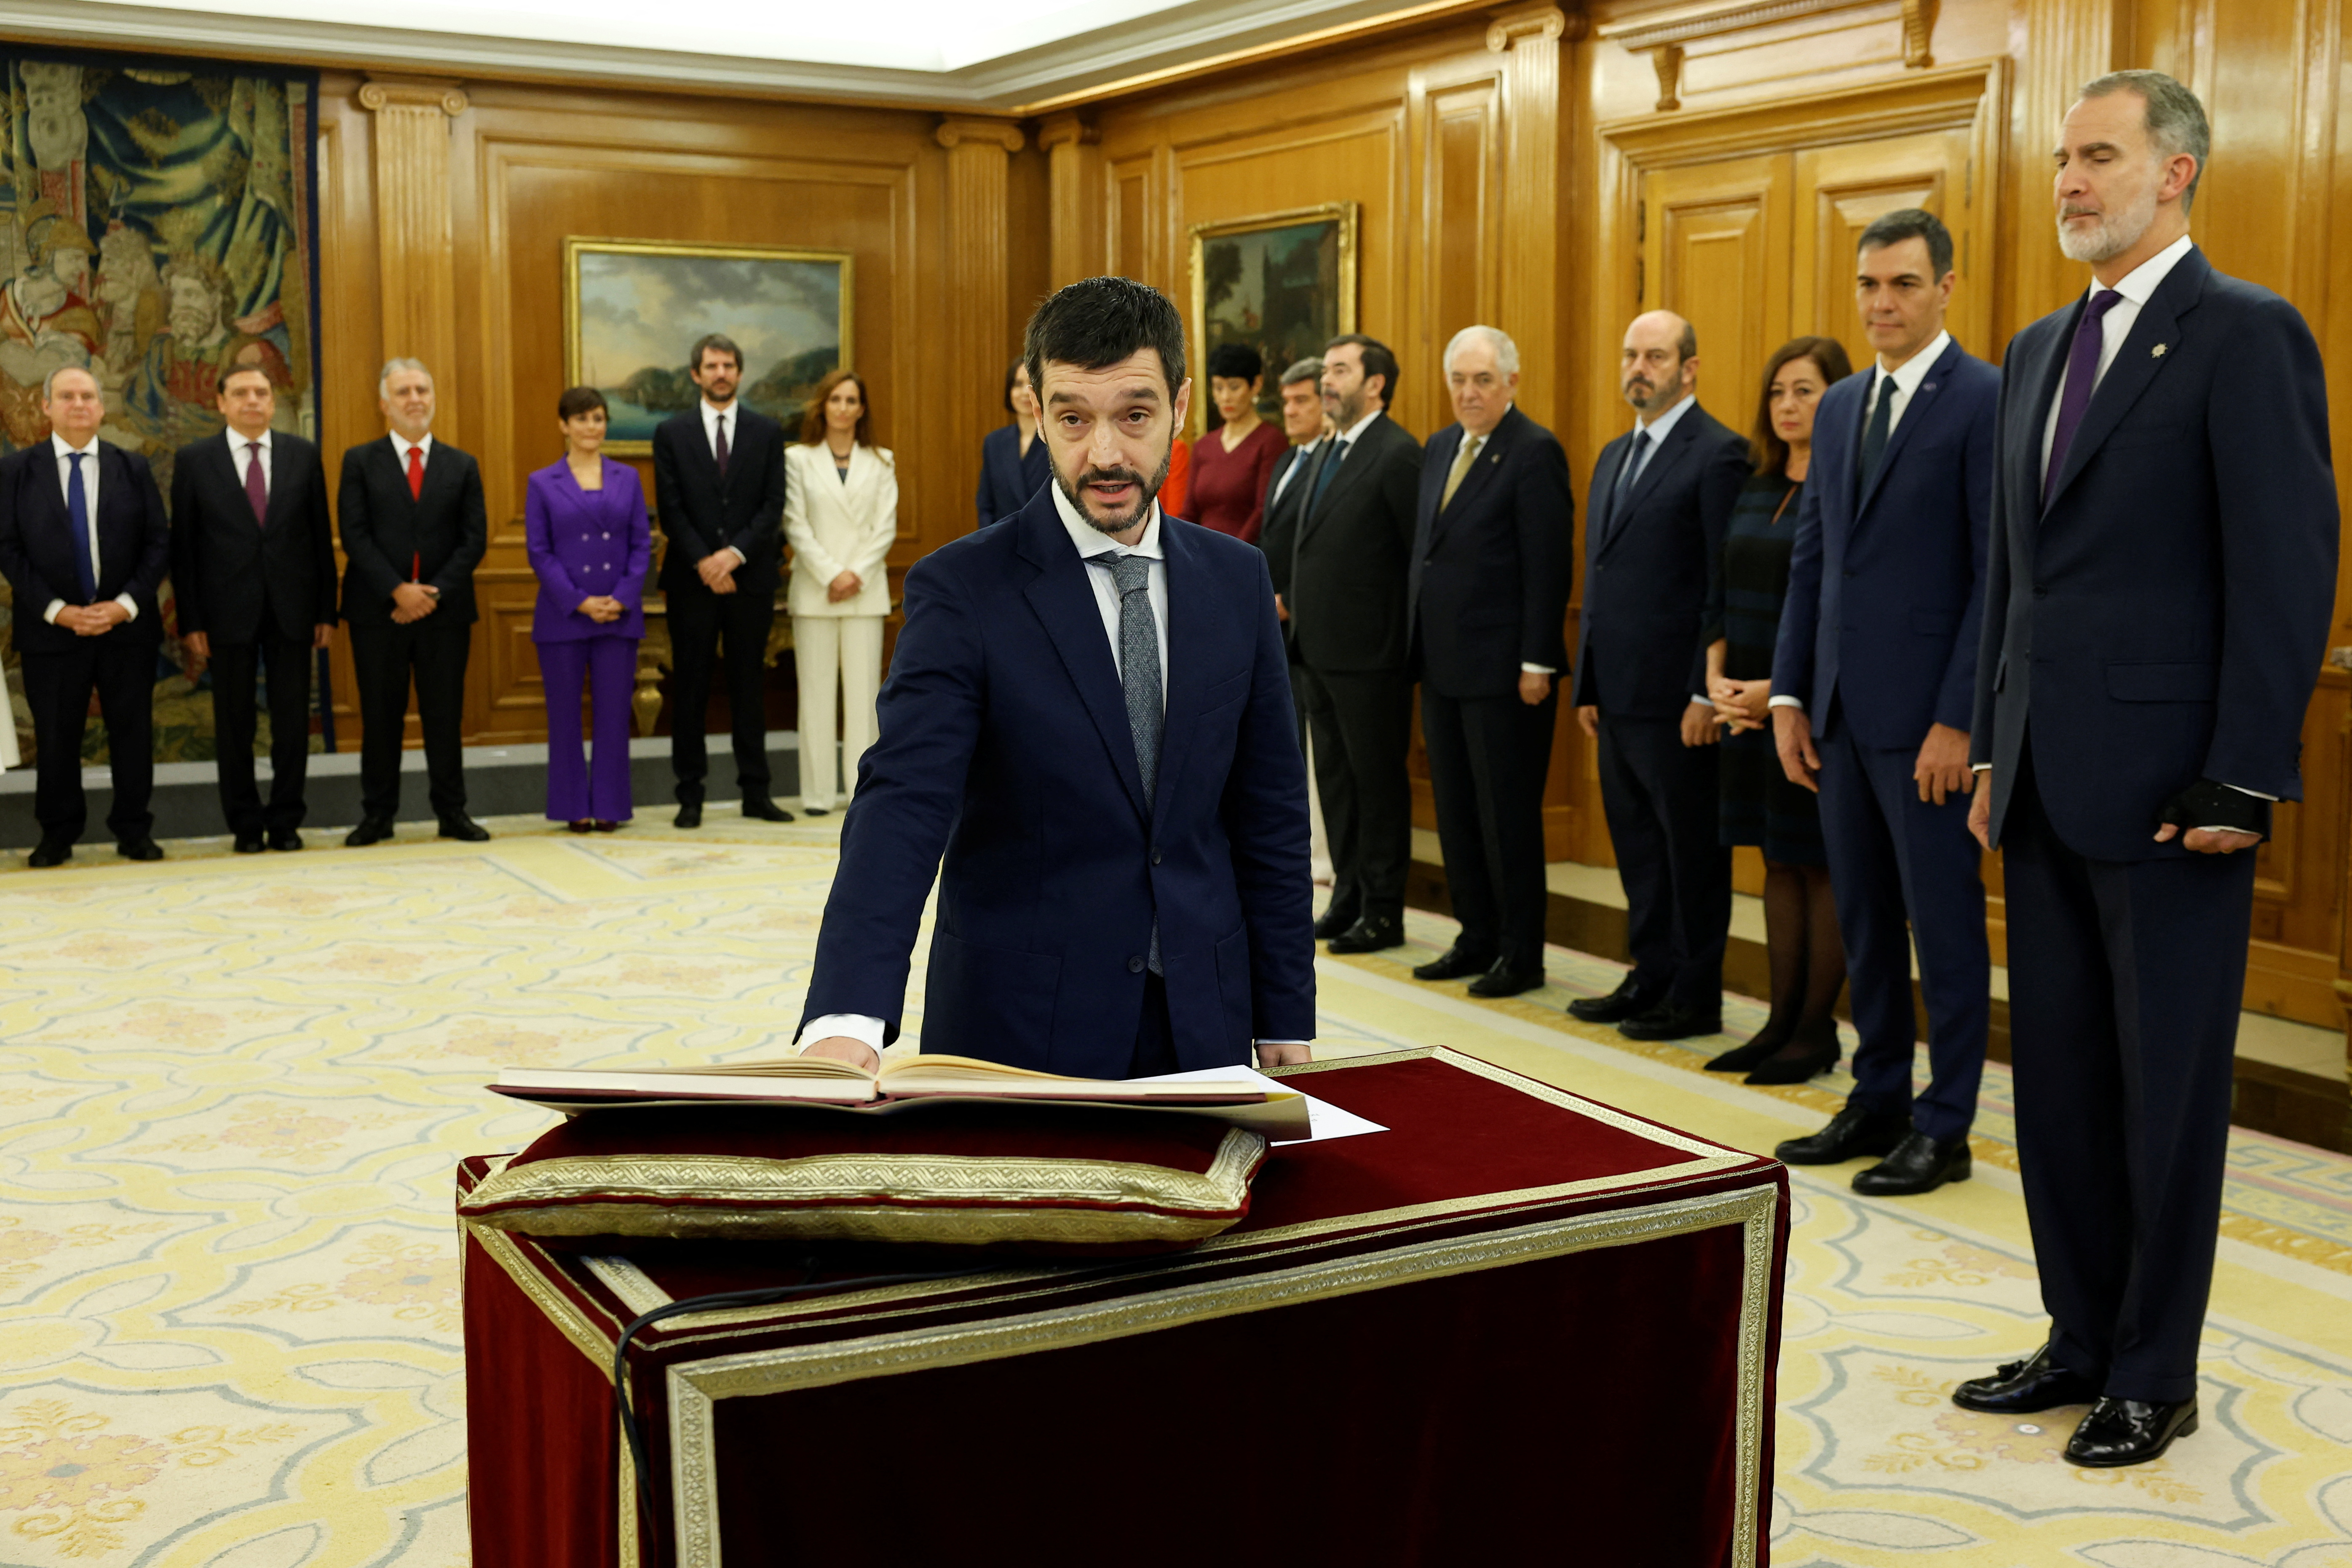 Spain's King Felipe swears-in the new cabinet, in Madrid